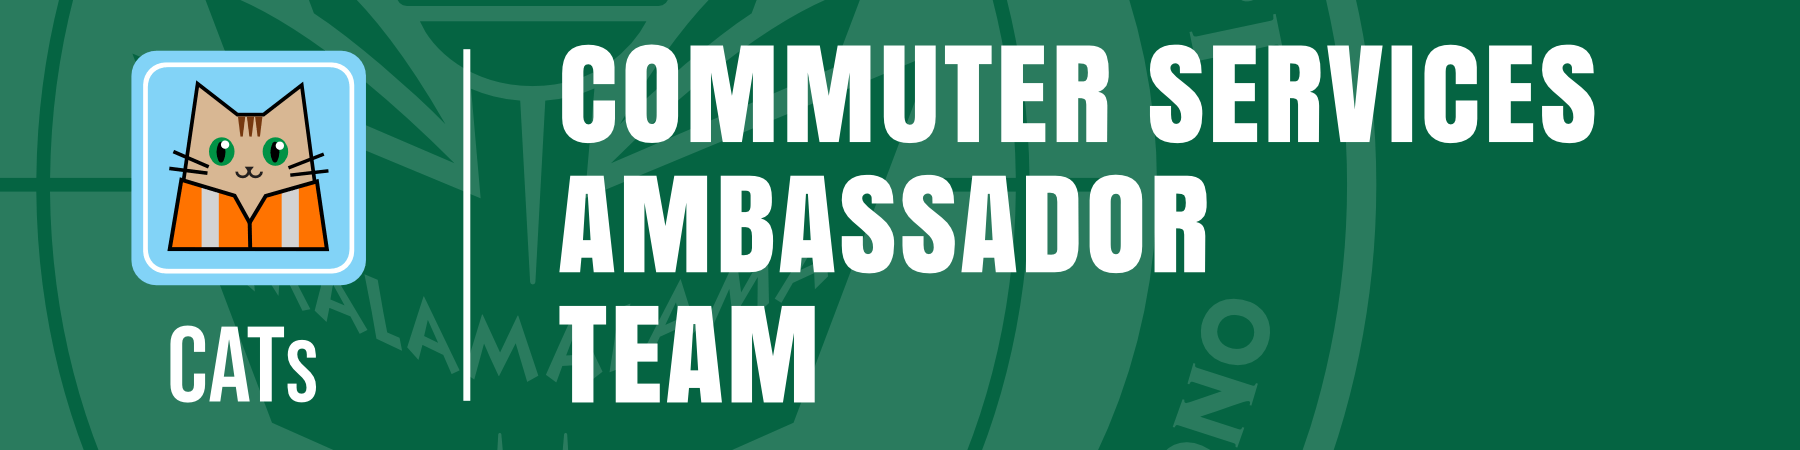 CATs - Commuter Services Ambassador Team